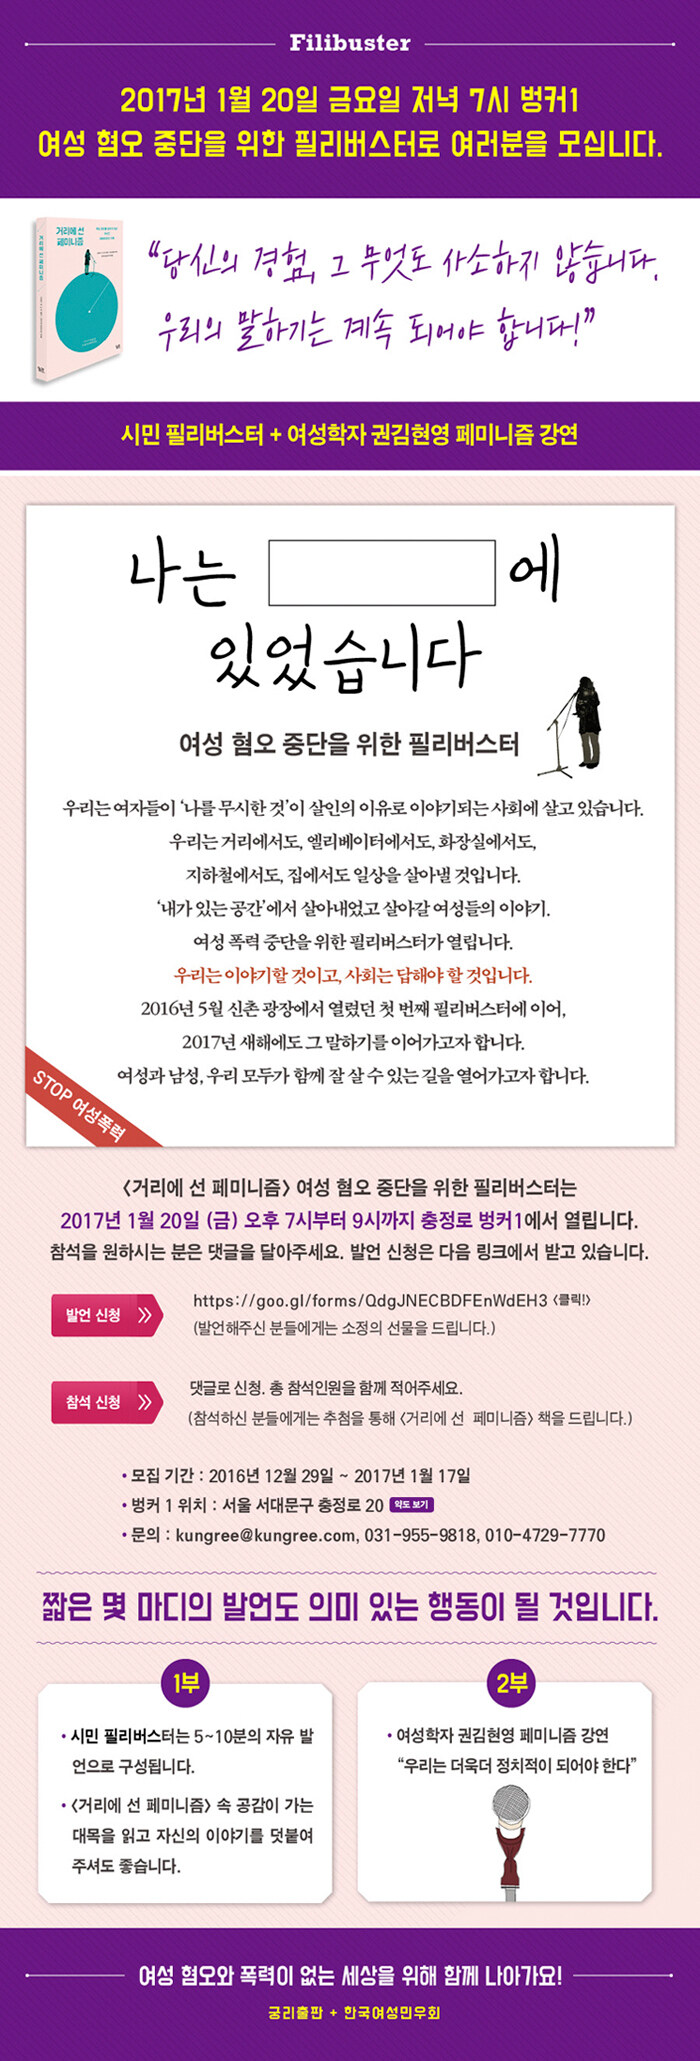 거리에 선 페미니즘 시민필리버스터+권김현영 강연회